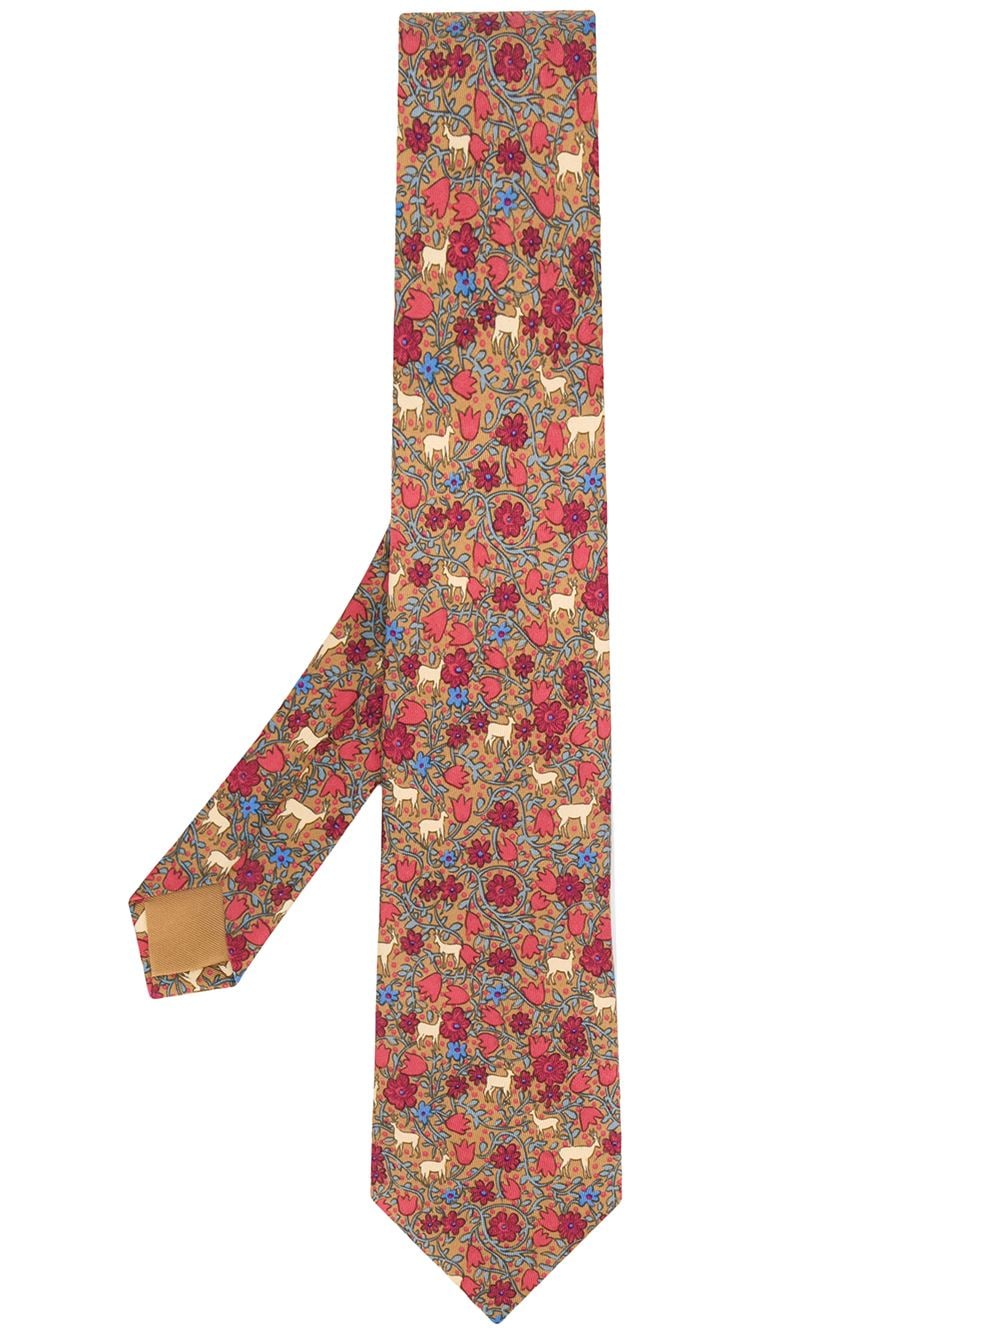 2000 pre-owned floral deer patterned tie